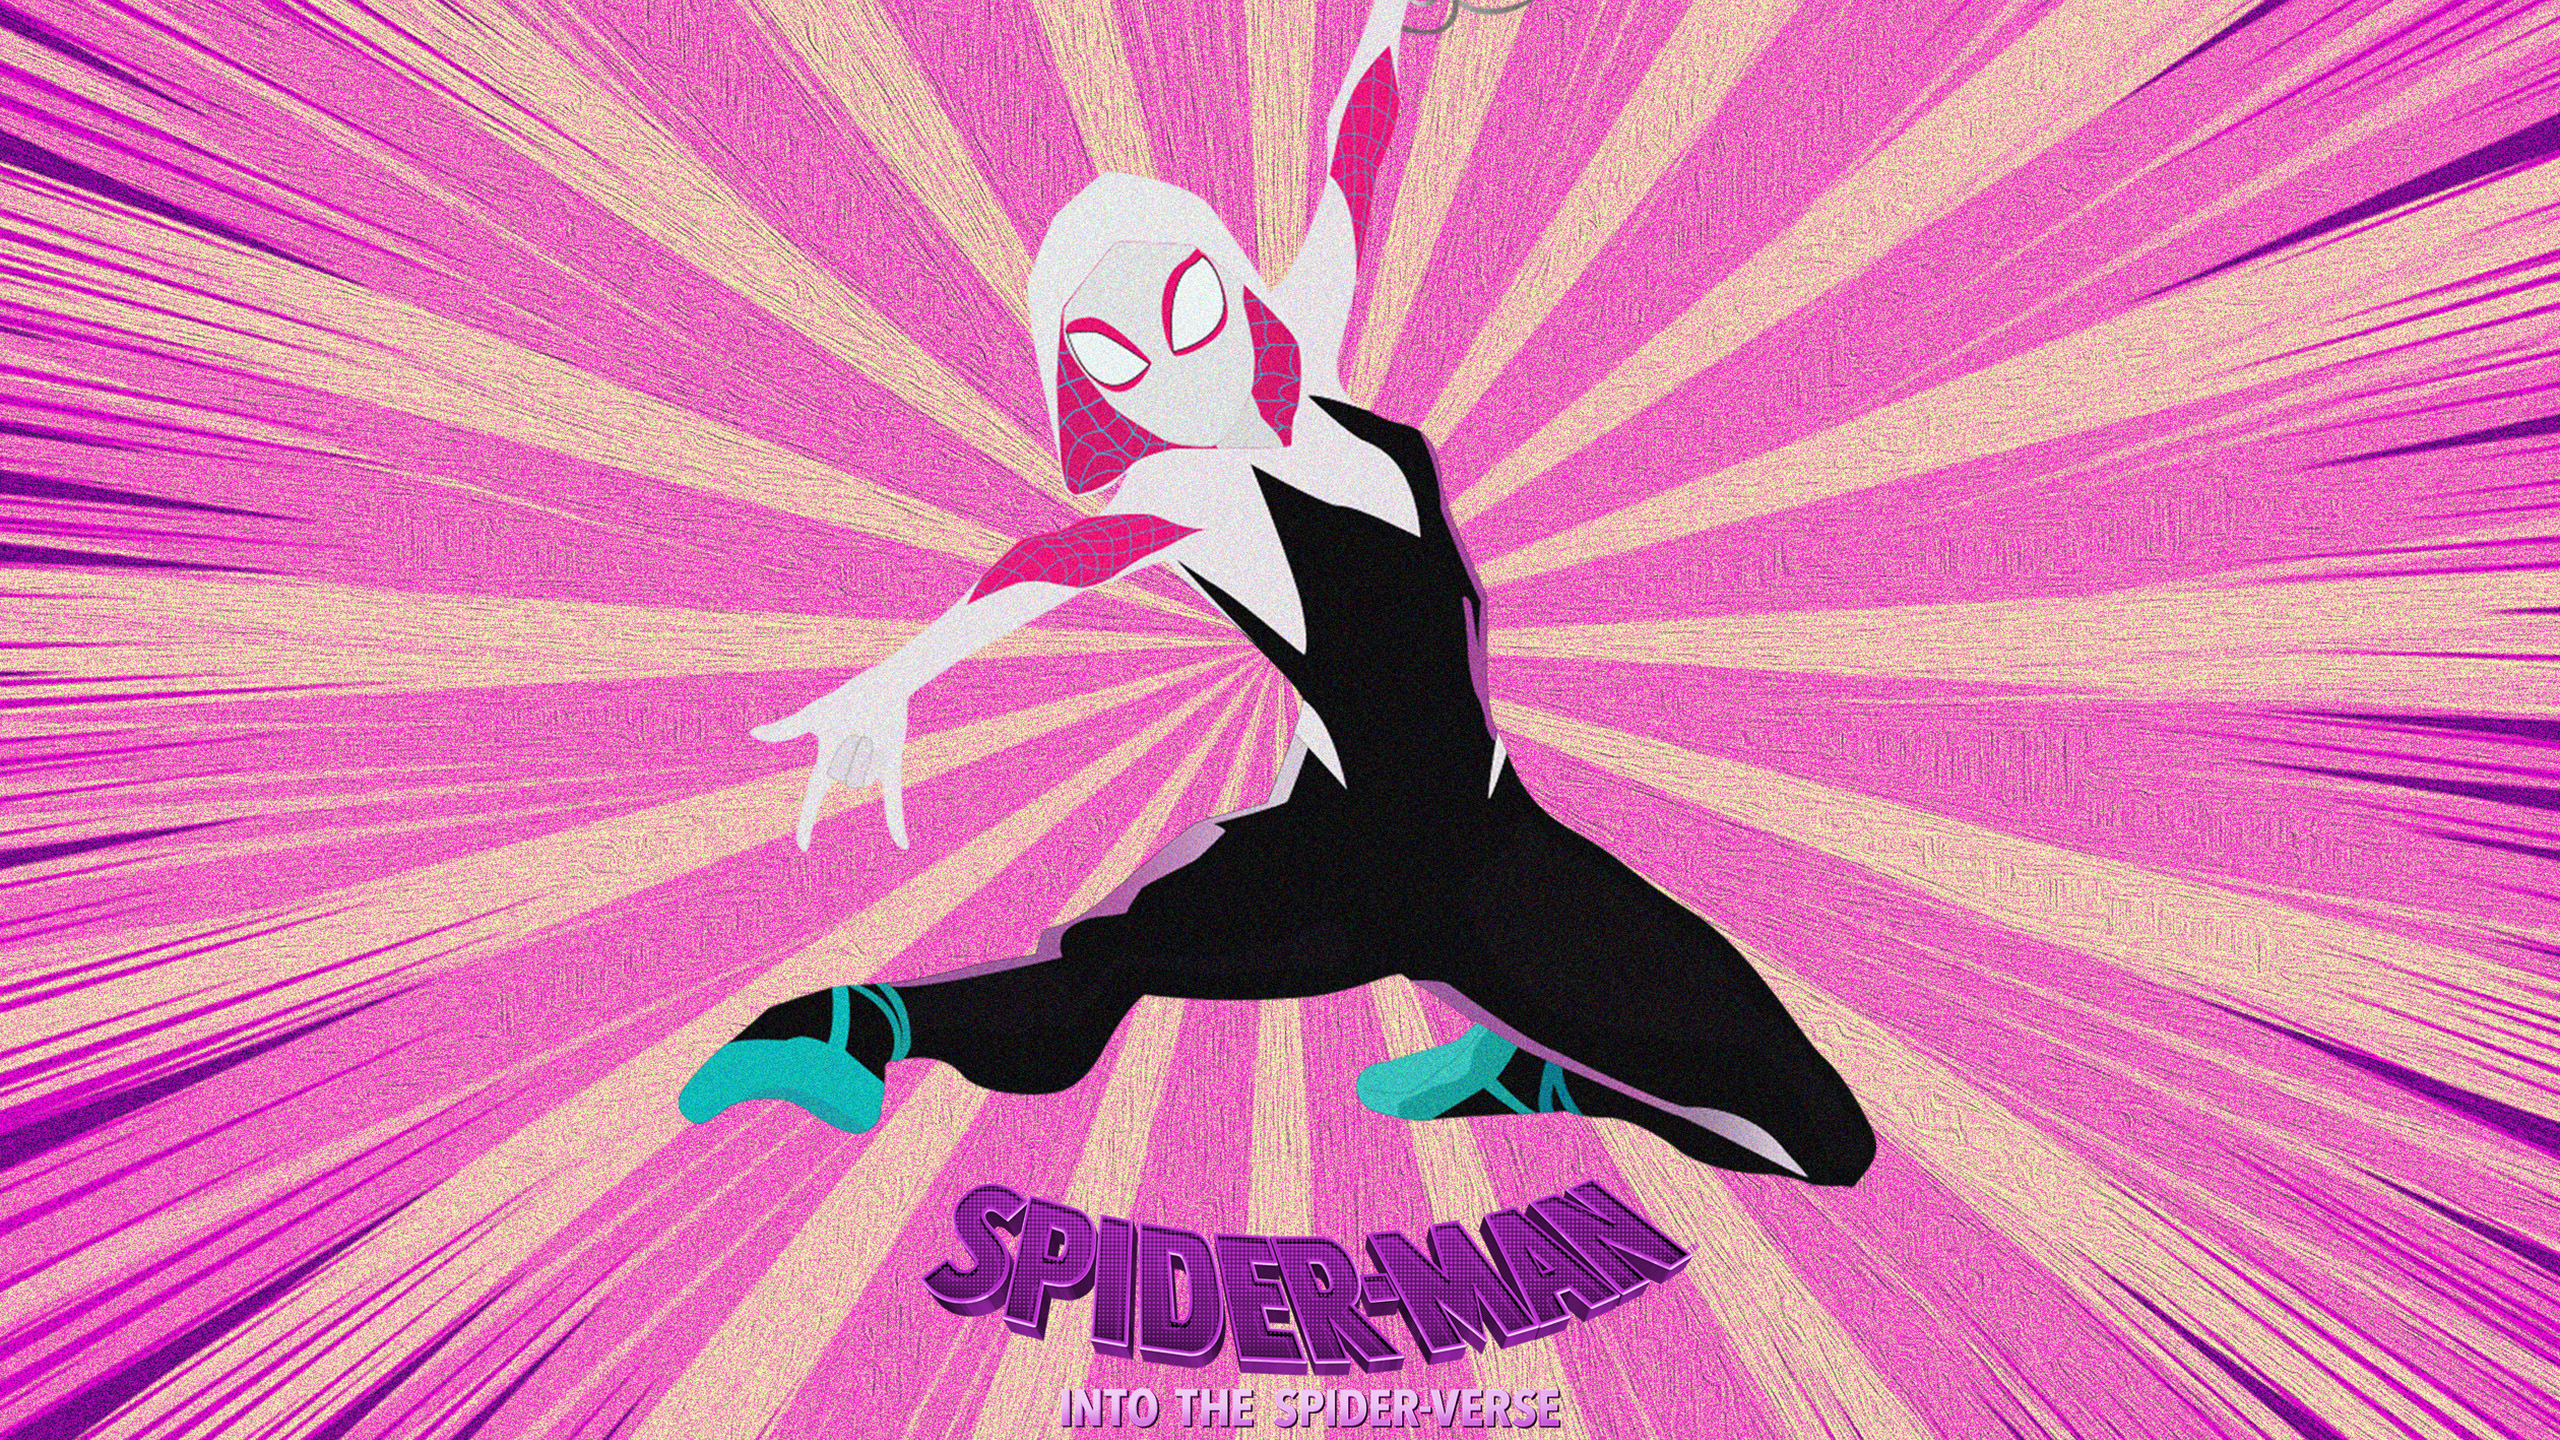 Spider-Gwen in Spider-Man Into the Spider-Verse